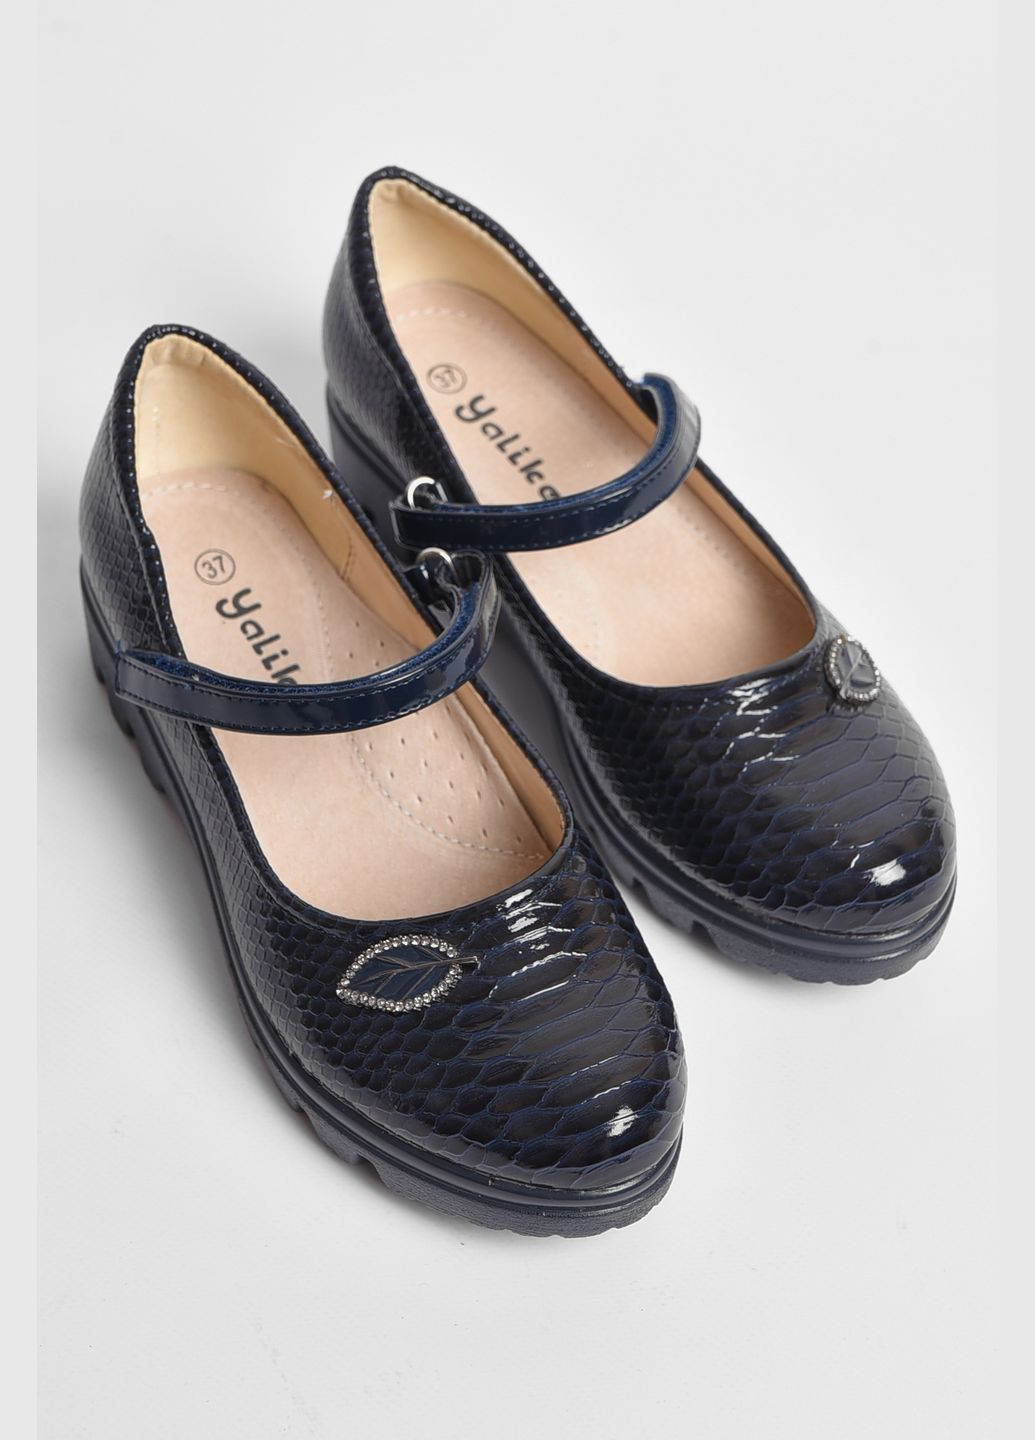 Темно-синие туфли детские для девочки темно-синего цвета без шнурков Let's Shop